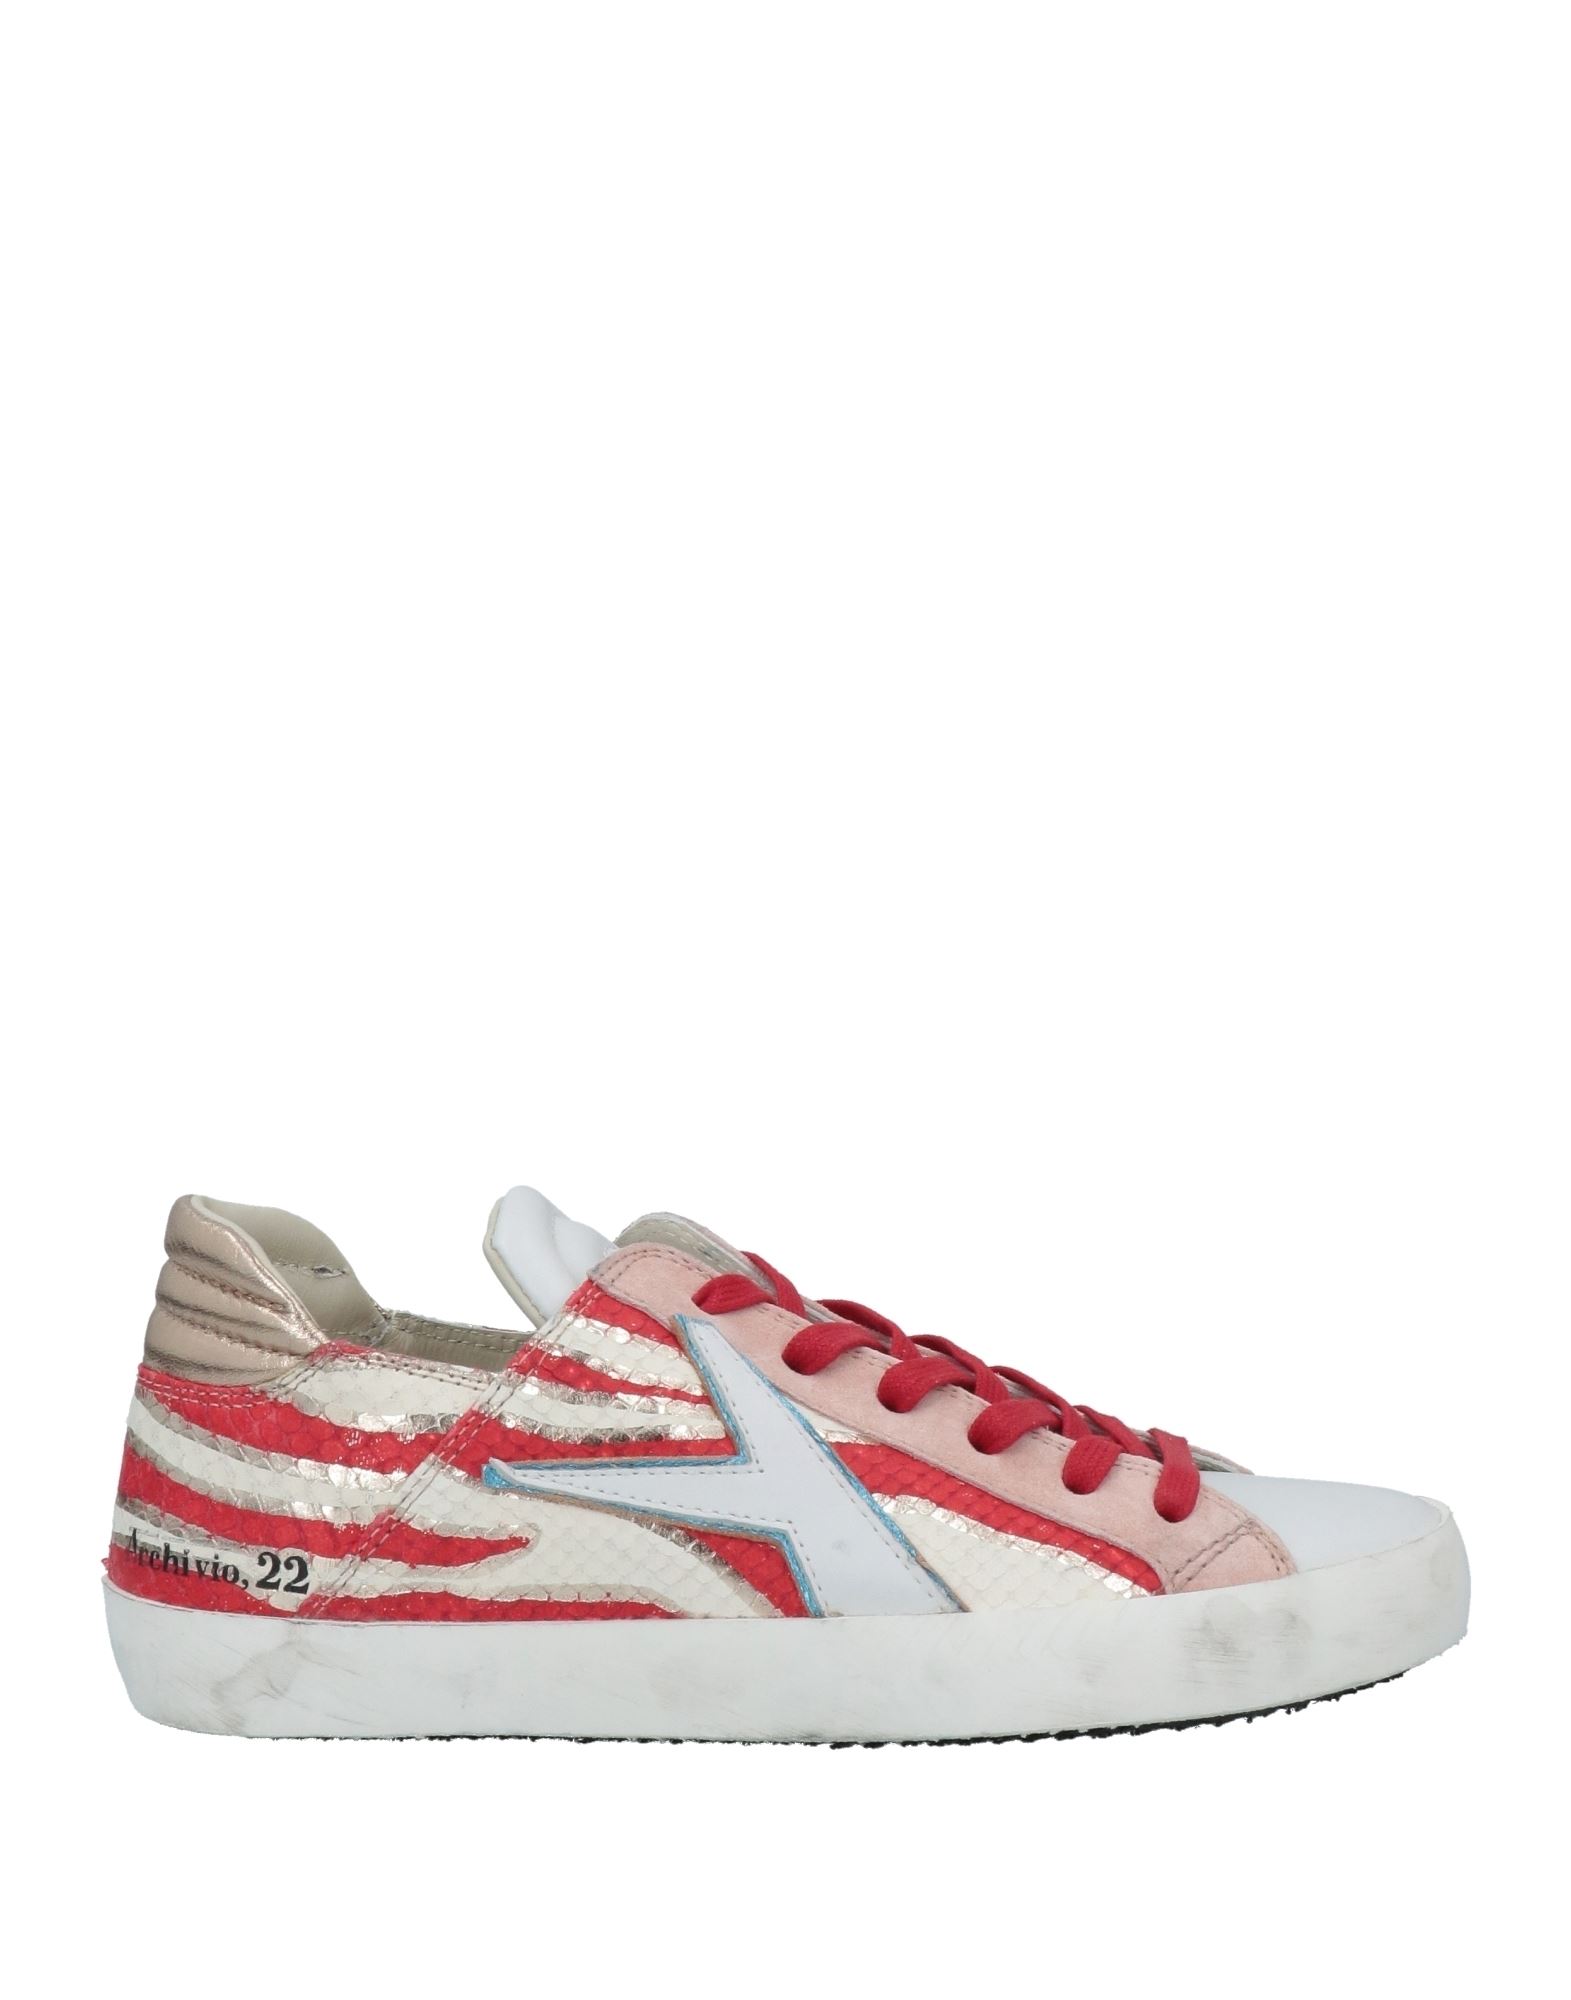 Archivio,22 Sneakers In White